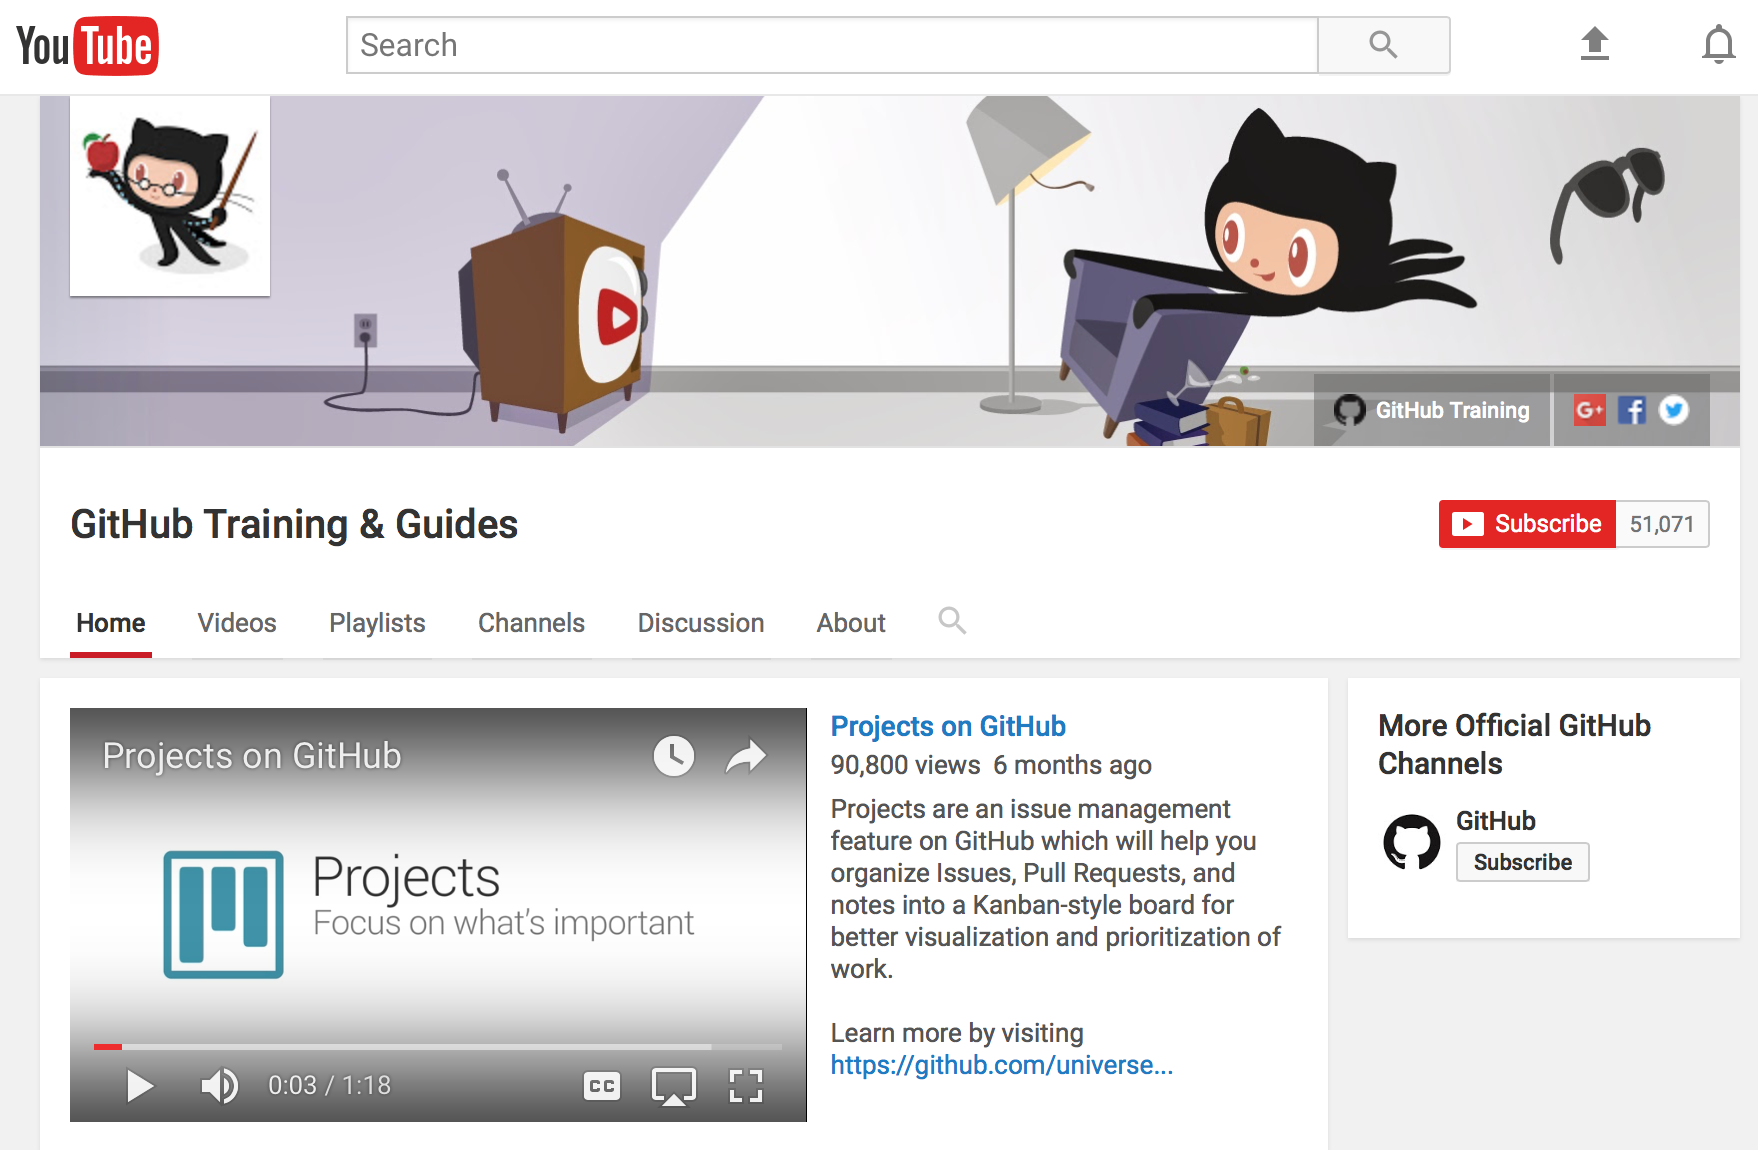 GitHub Training & Guides on YouTube